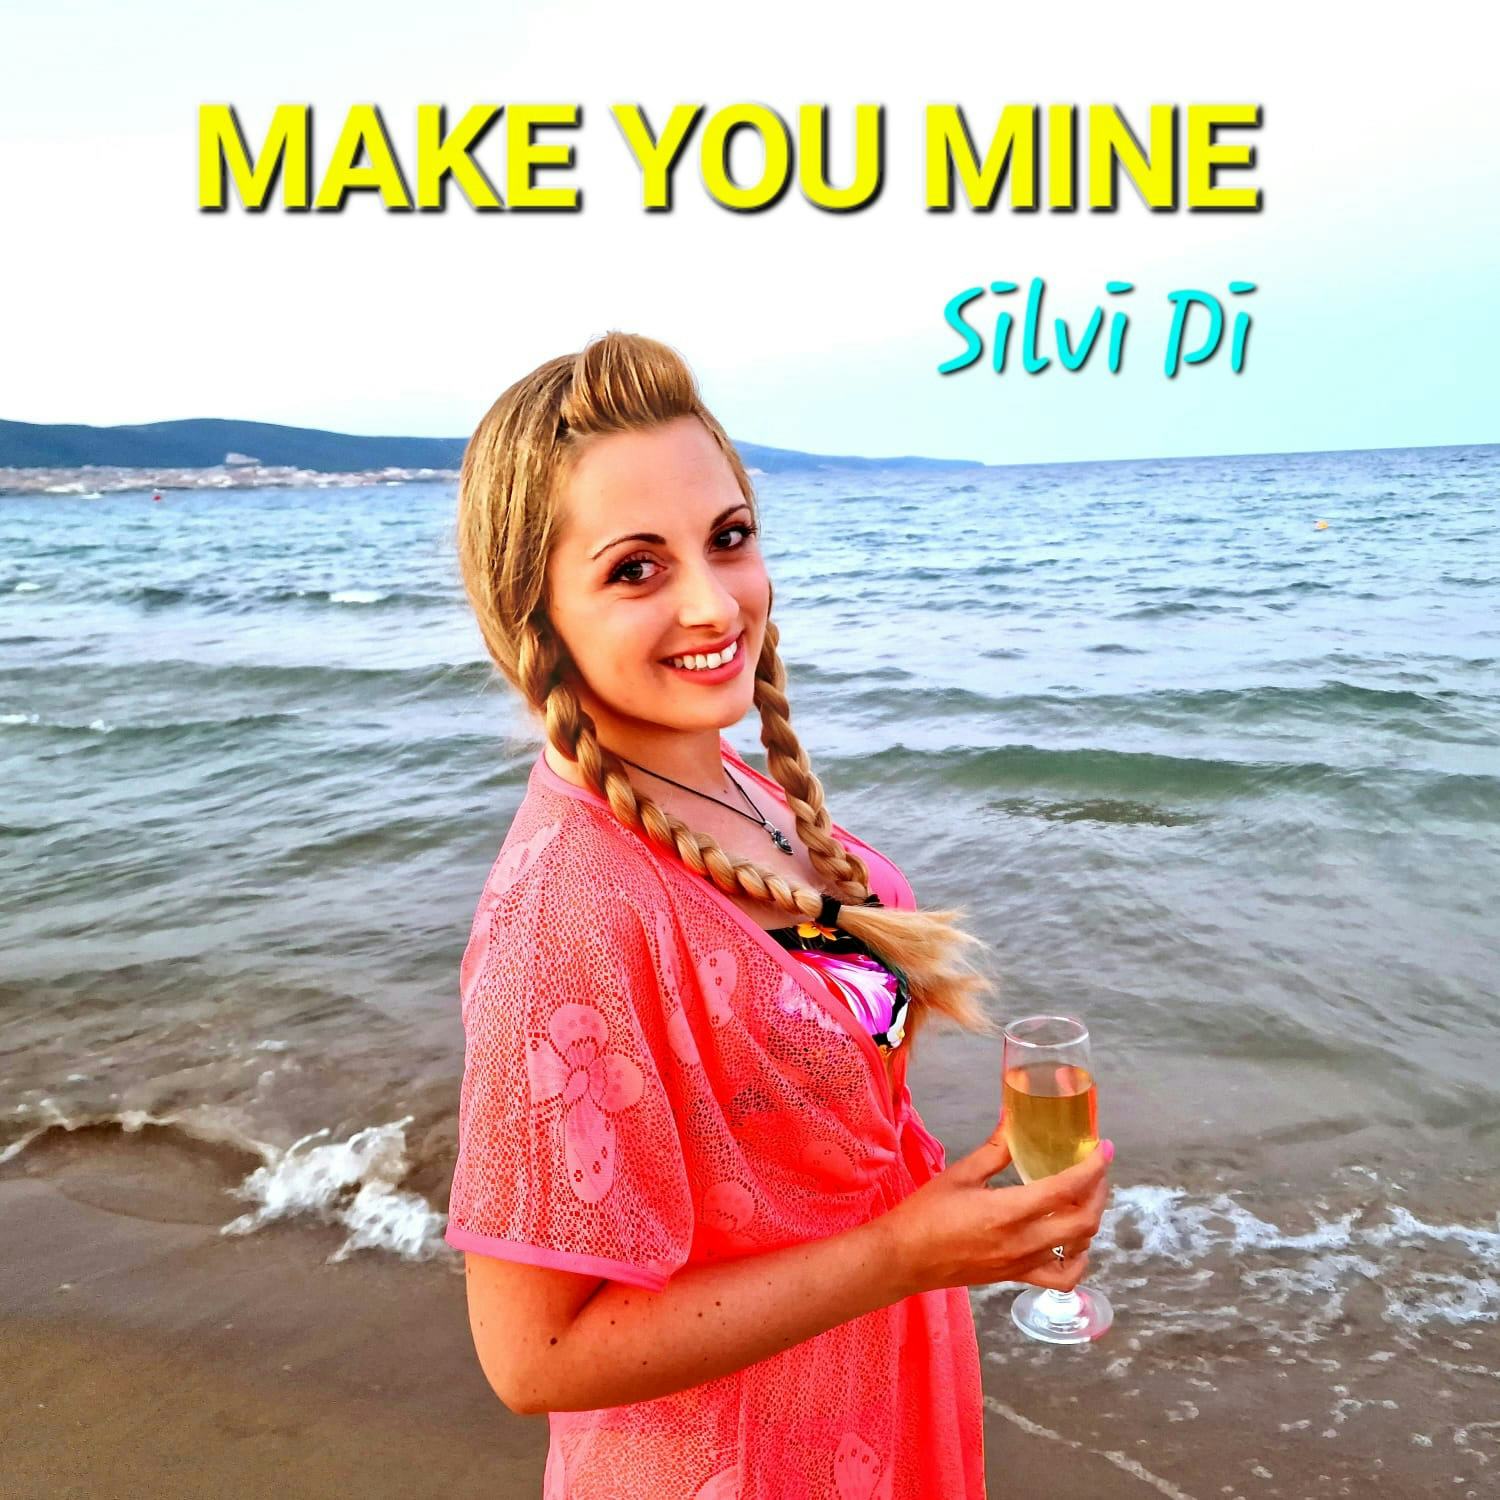 Silvi Di - Make you mine - live performance